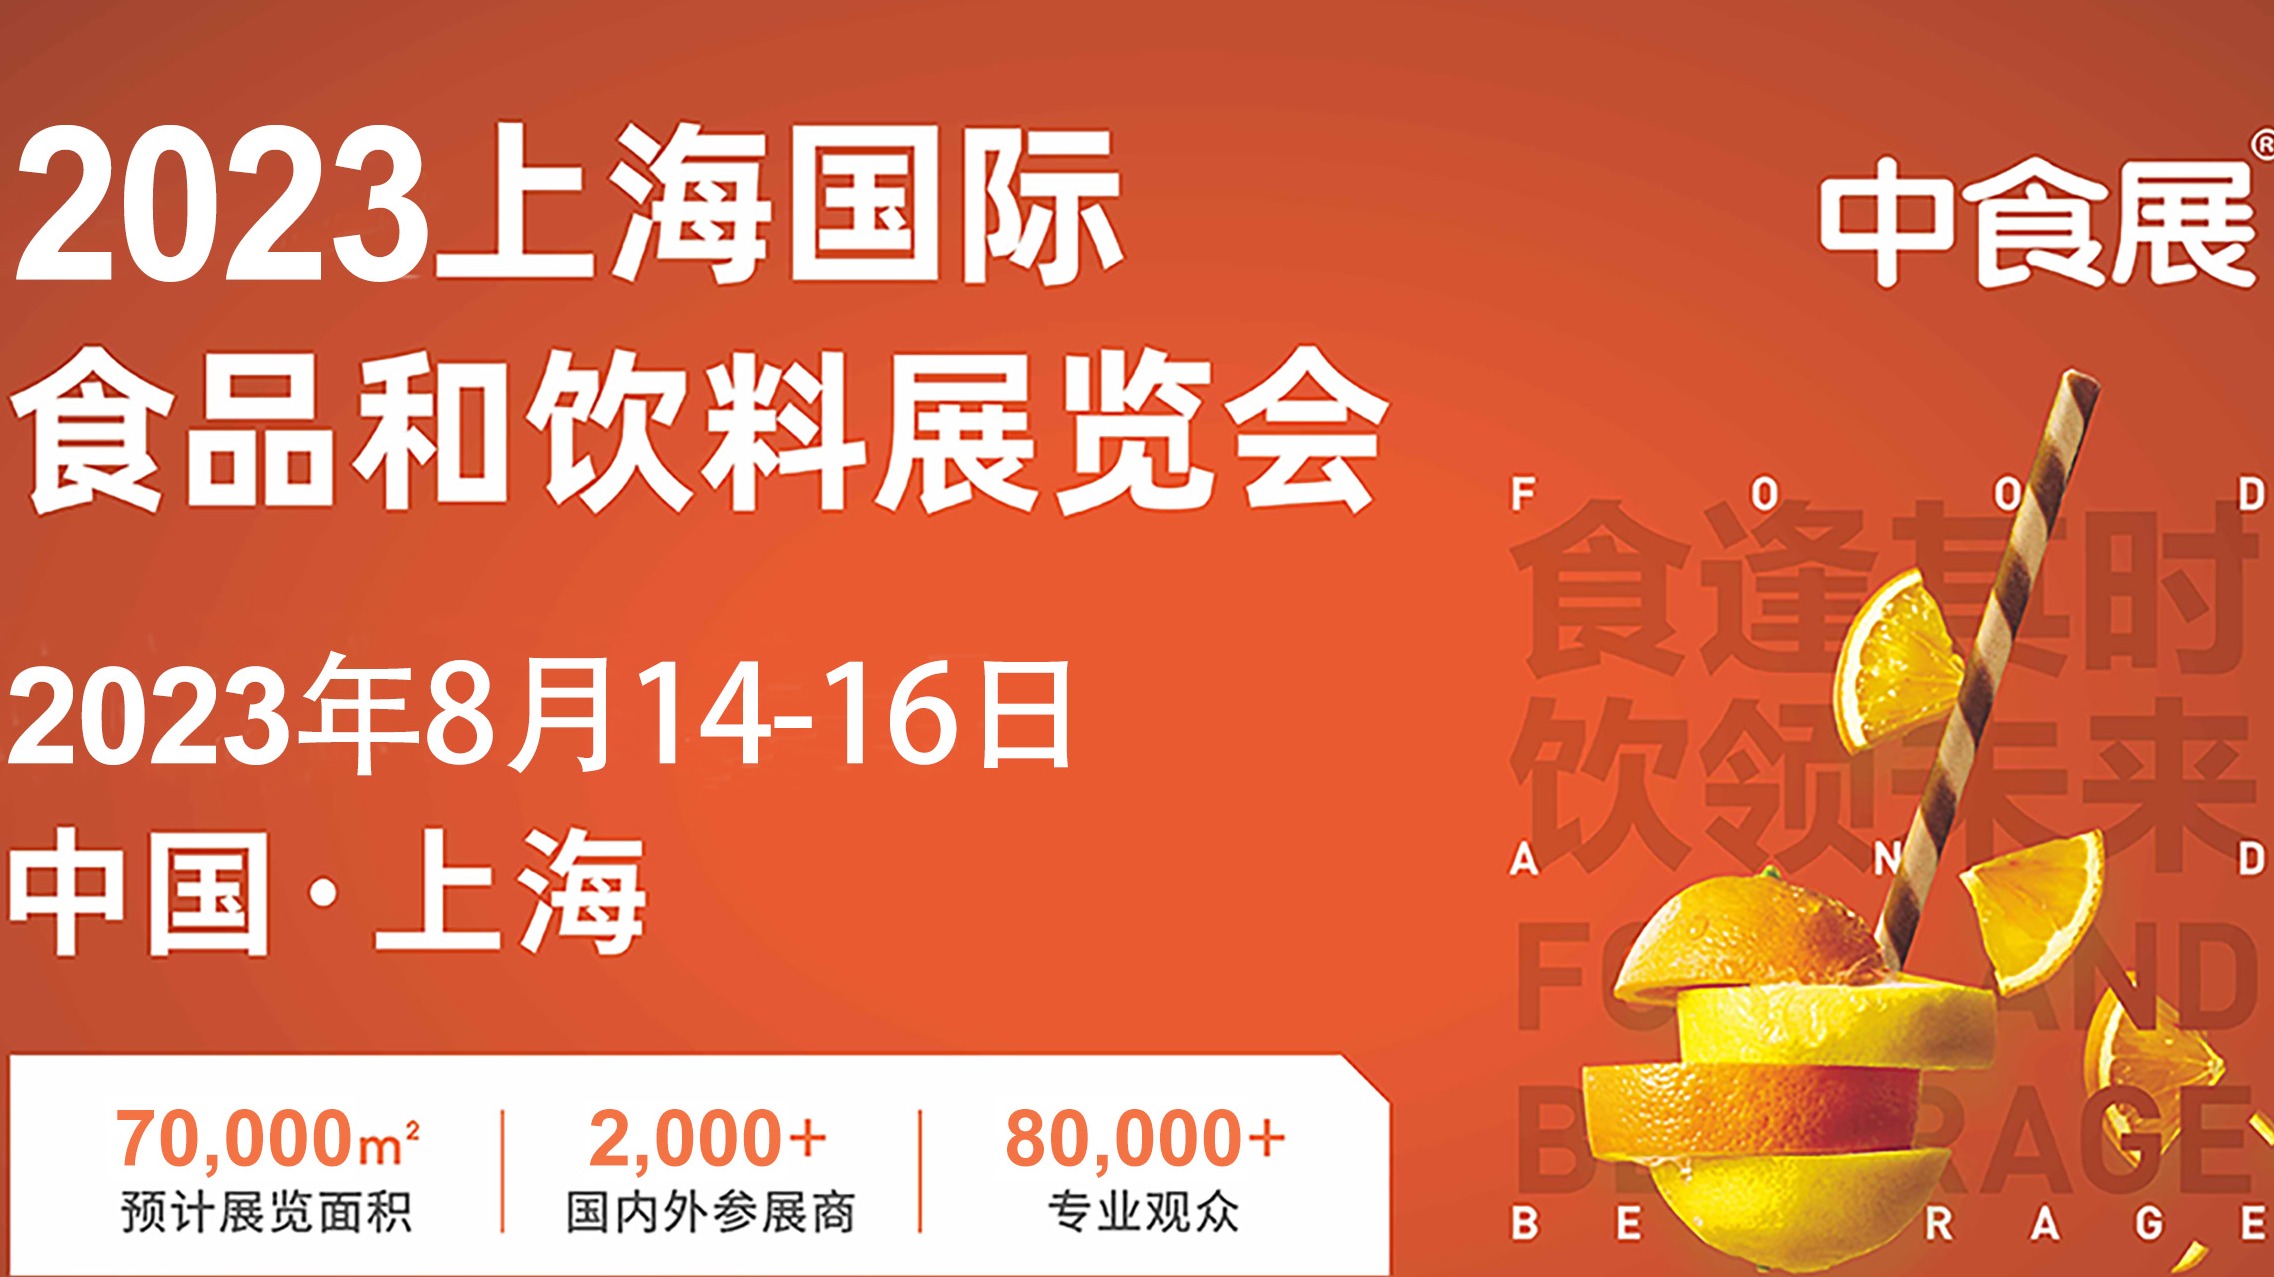 2023中食展/上海国际食品和饮料展览会